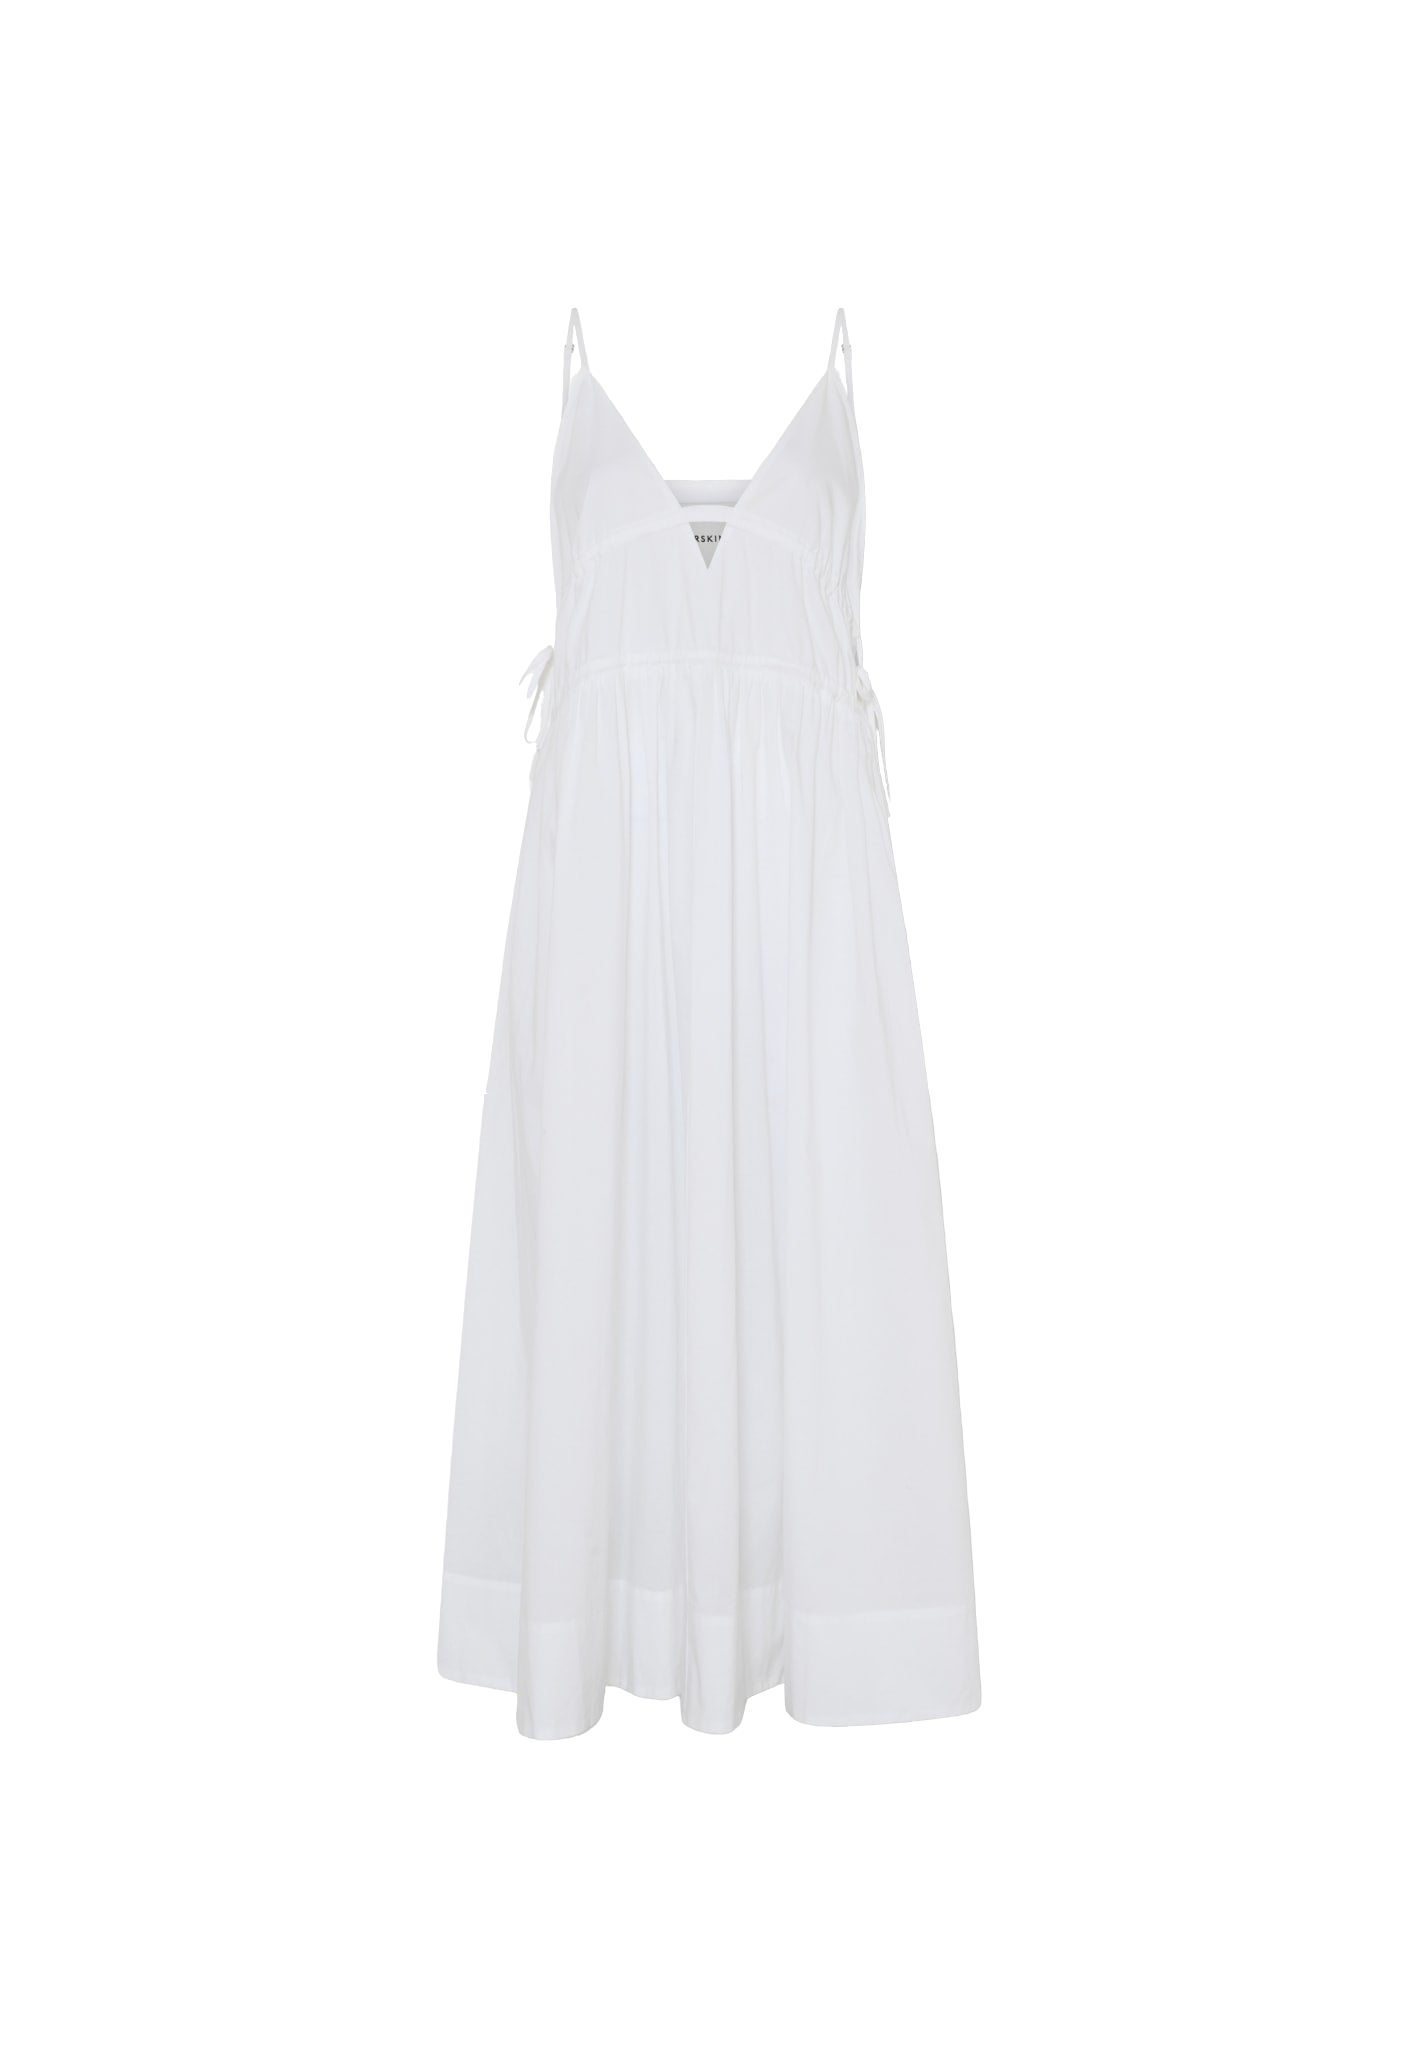 Herskind Miranda Dress In White